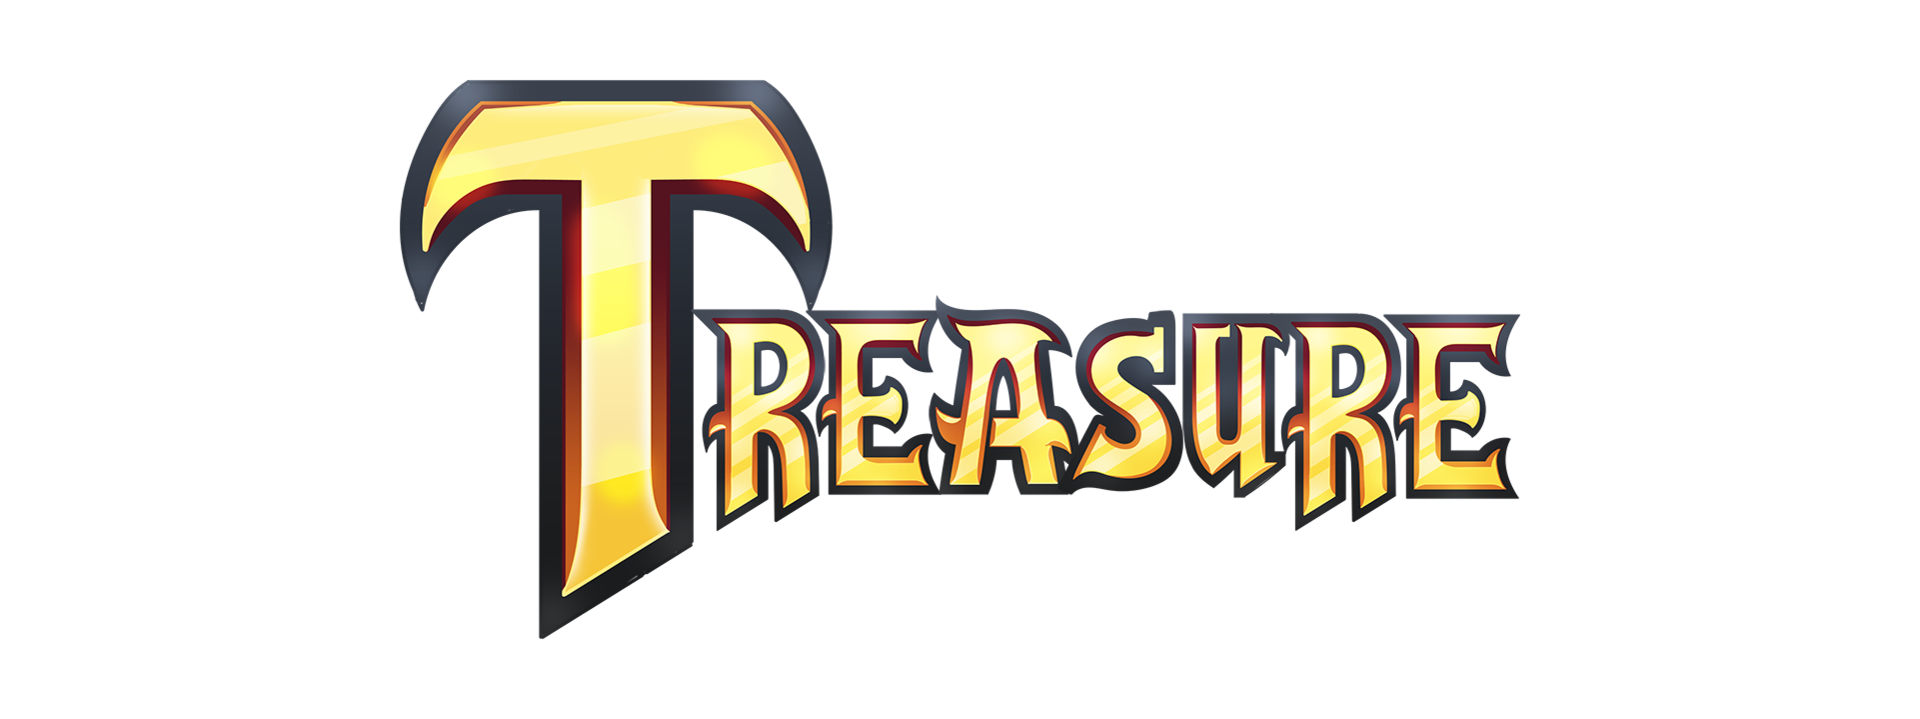 treasure-dizilis1080png.png